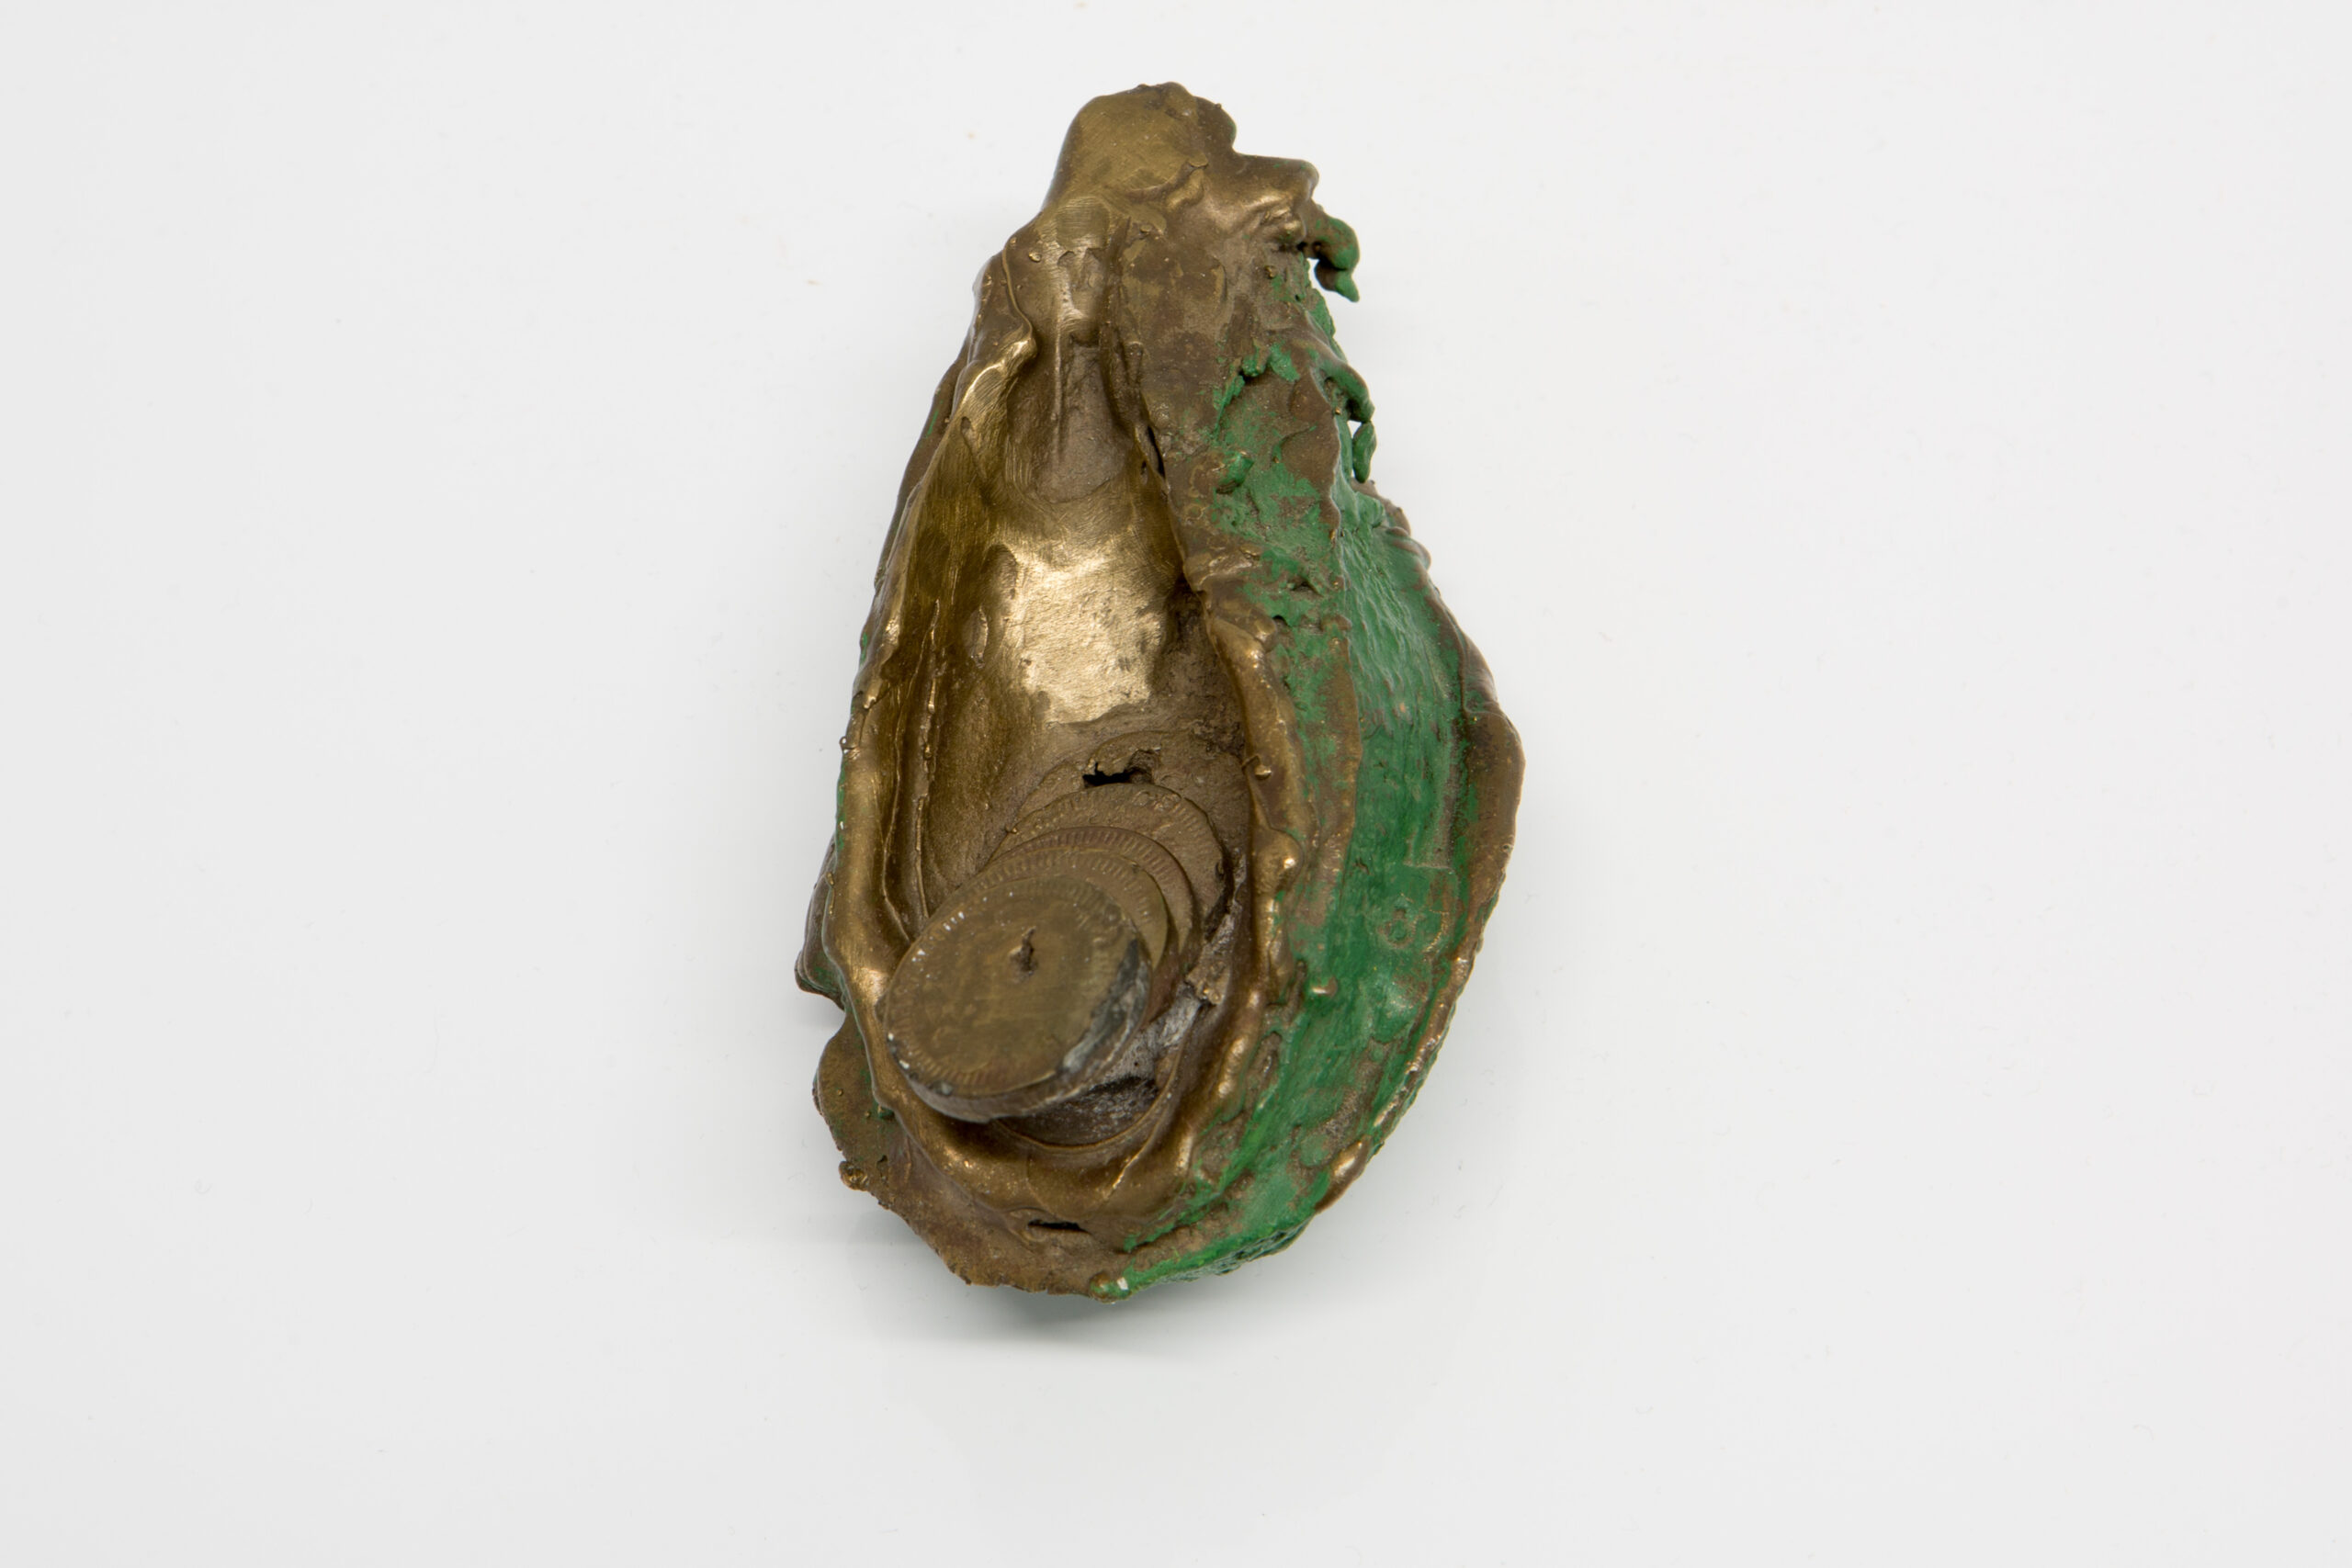 Lana Locke Avocado and coins (i) (single) (2012) 5 cm x 12 cm x 7 cm, Cast bronze